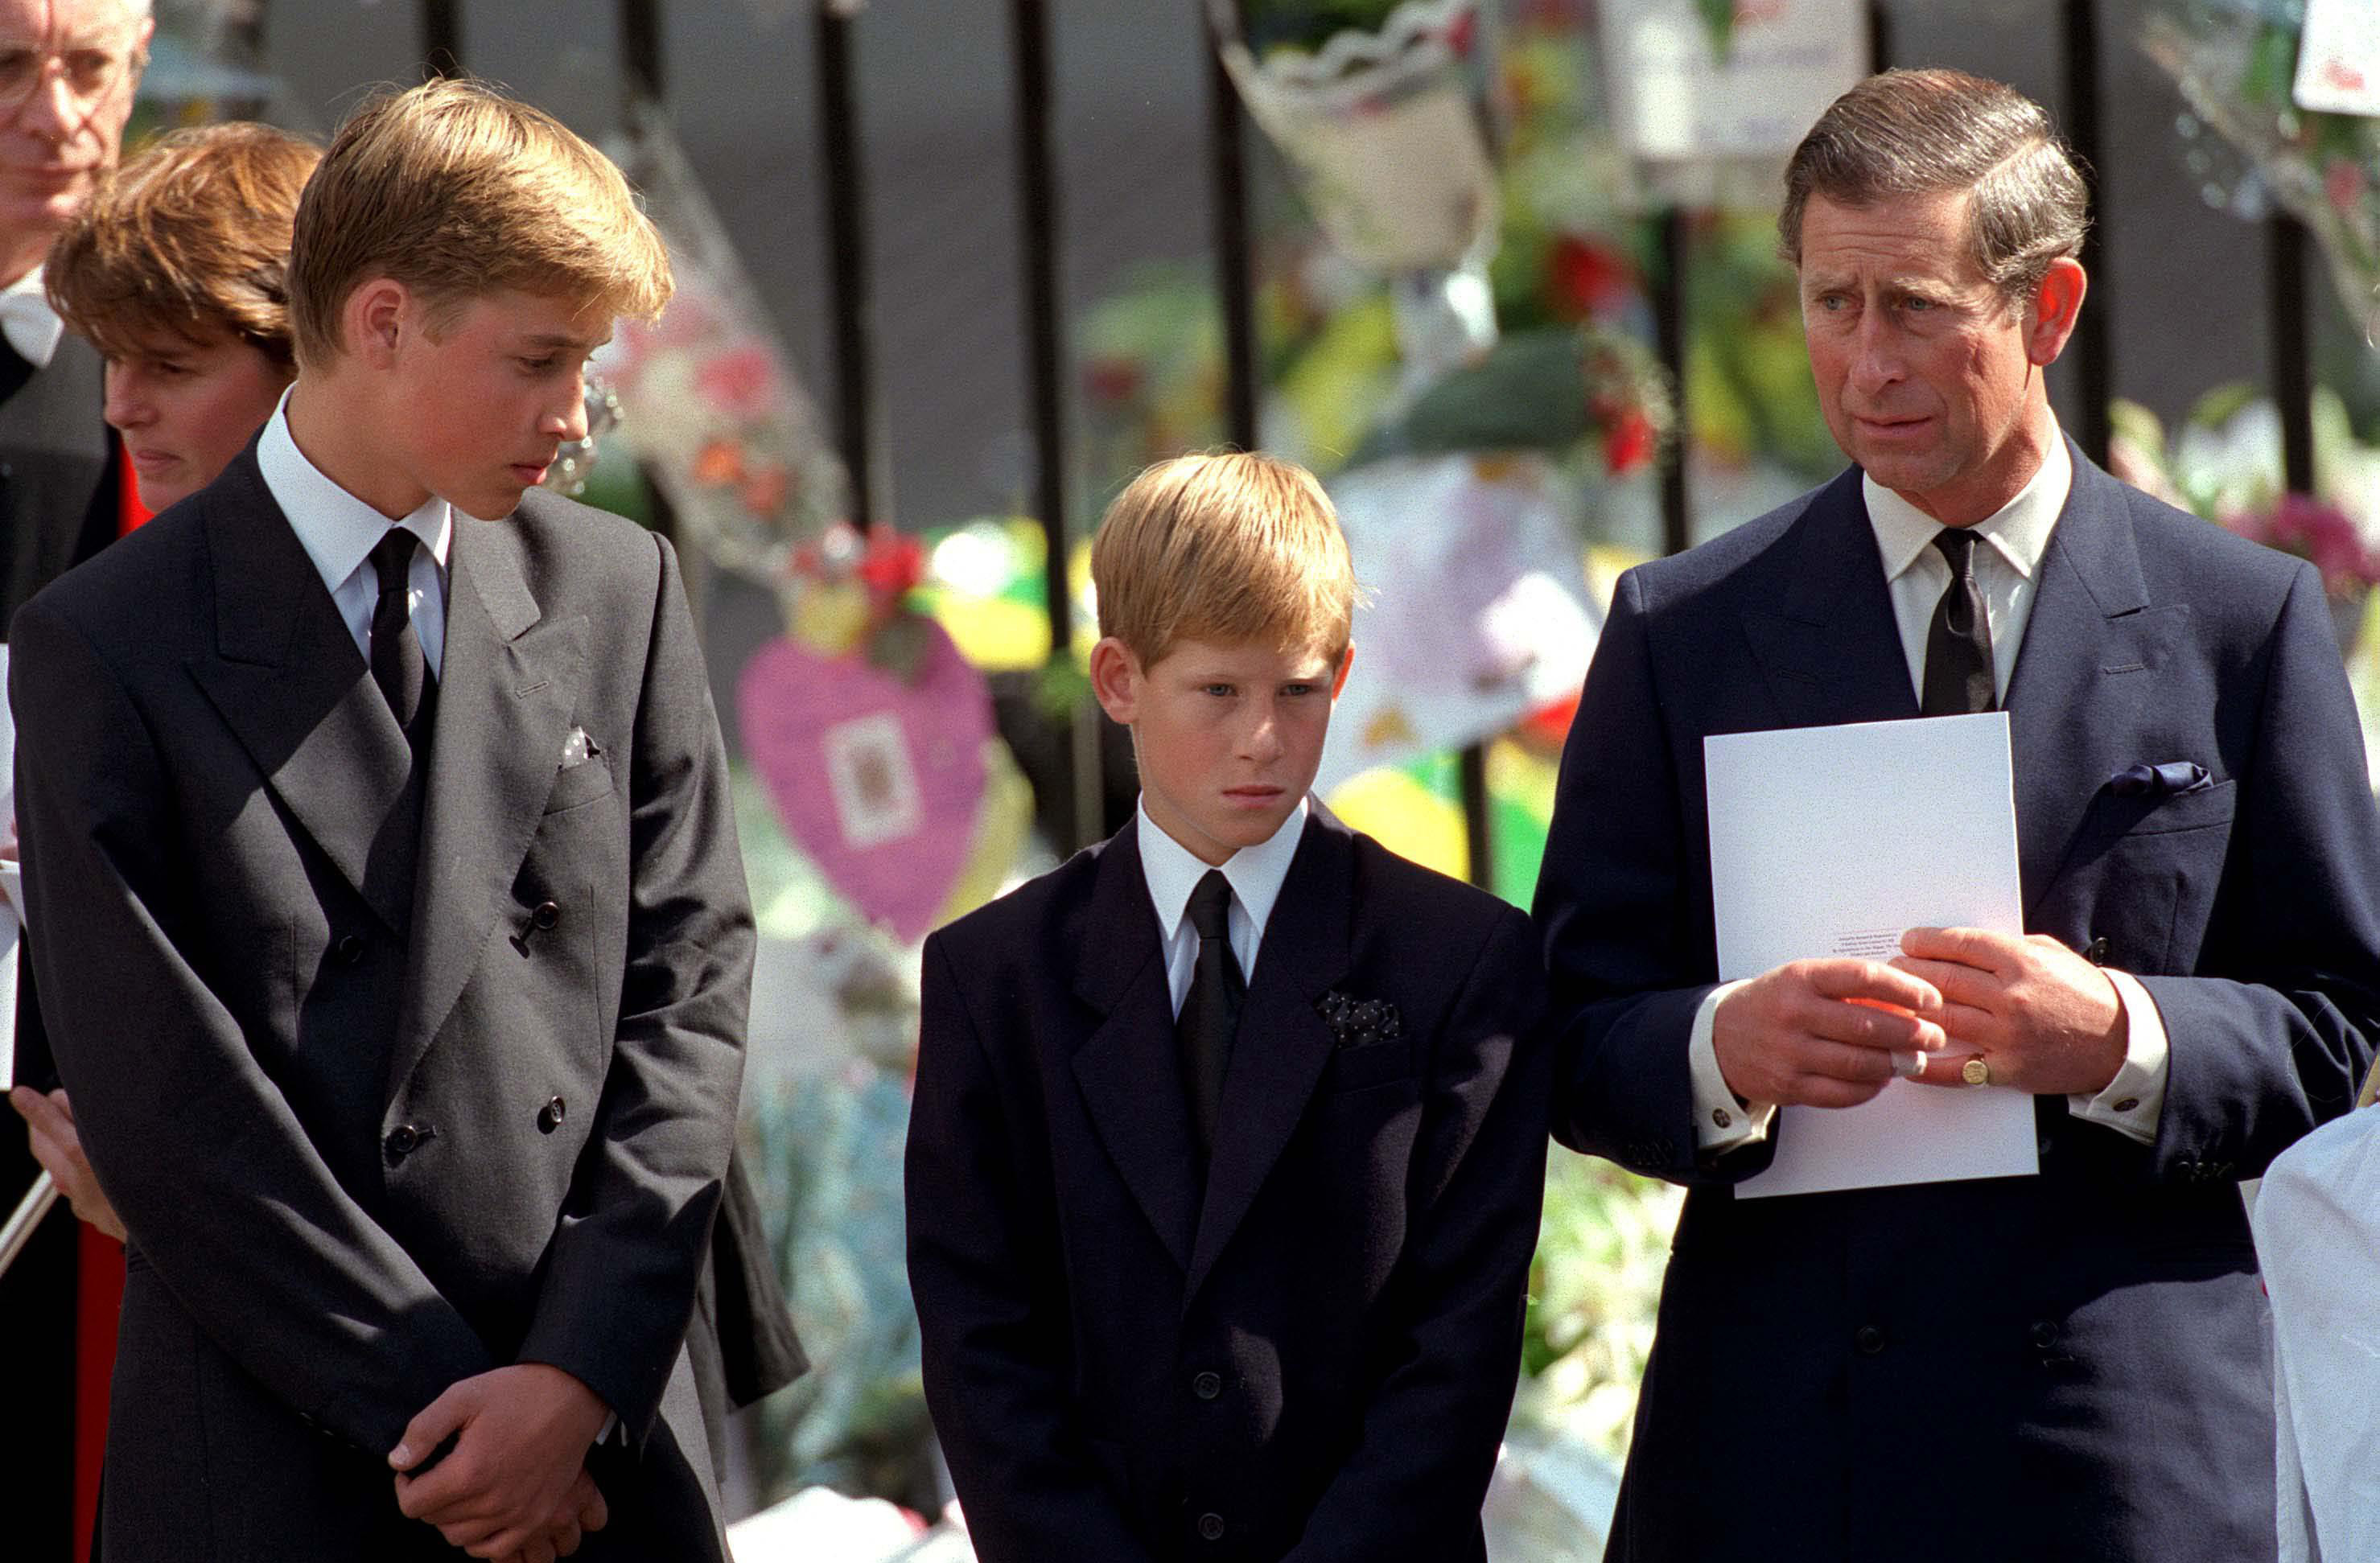 Le prince William, le prince Harry et le roi Charles III aux funérailles de la princesse Diana à Londres, en Angleterre, le 6 septembre 1997 | Source : Getty Images